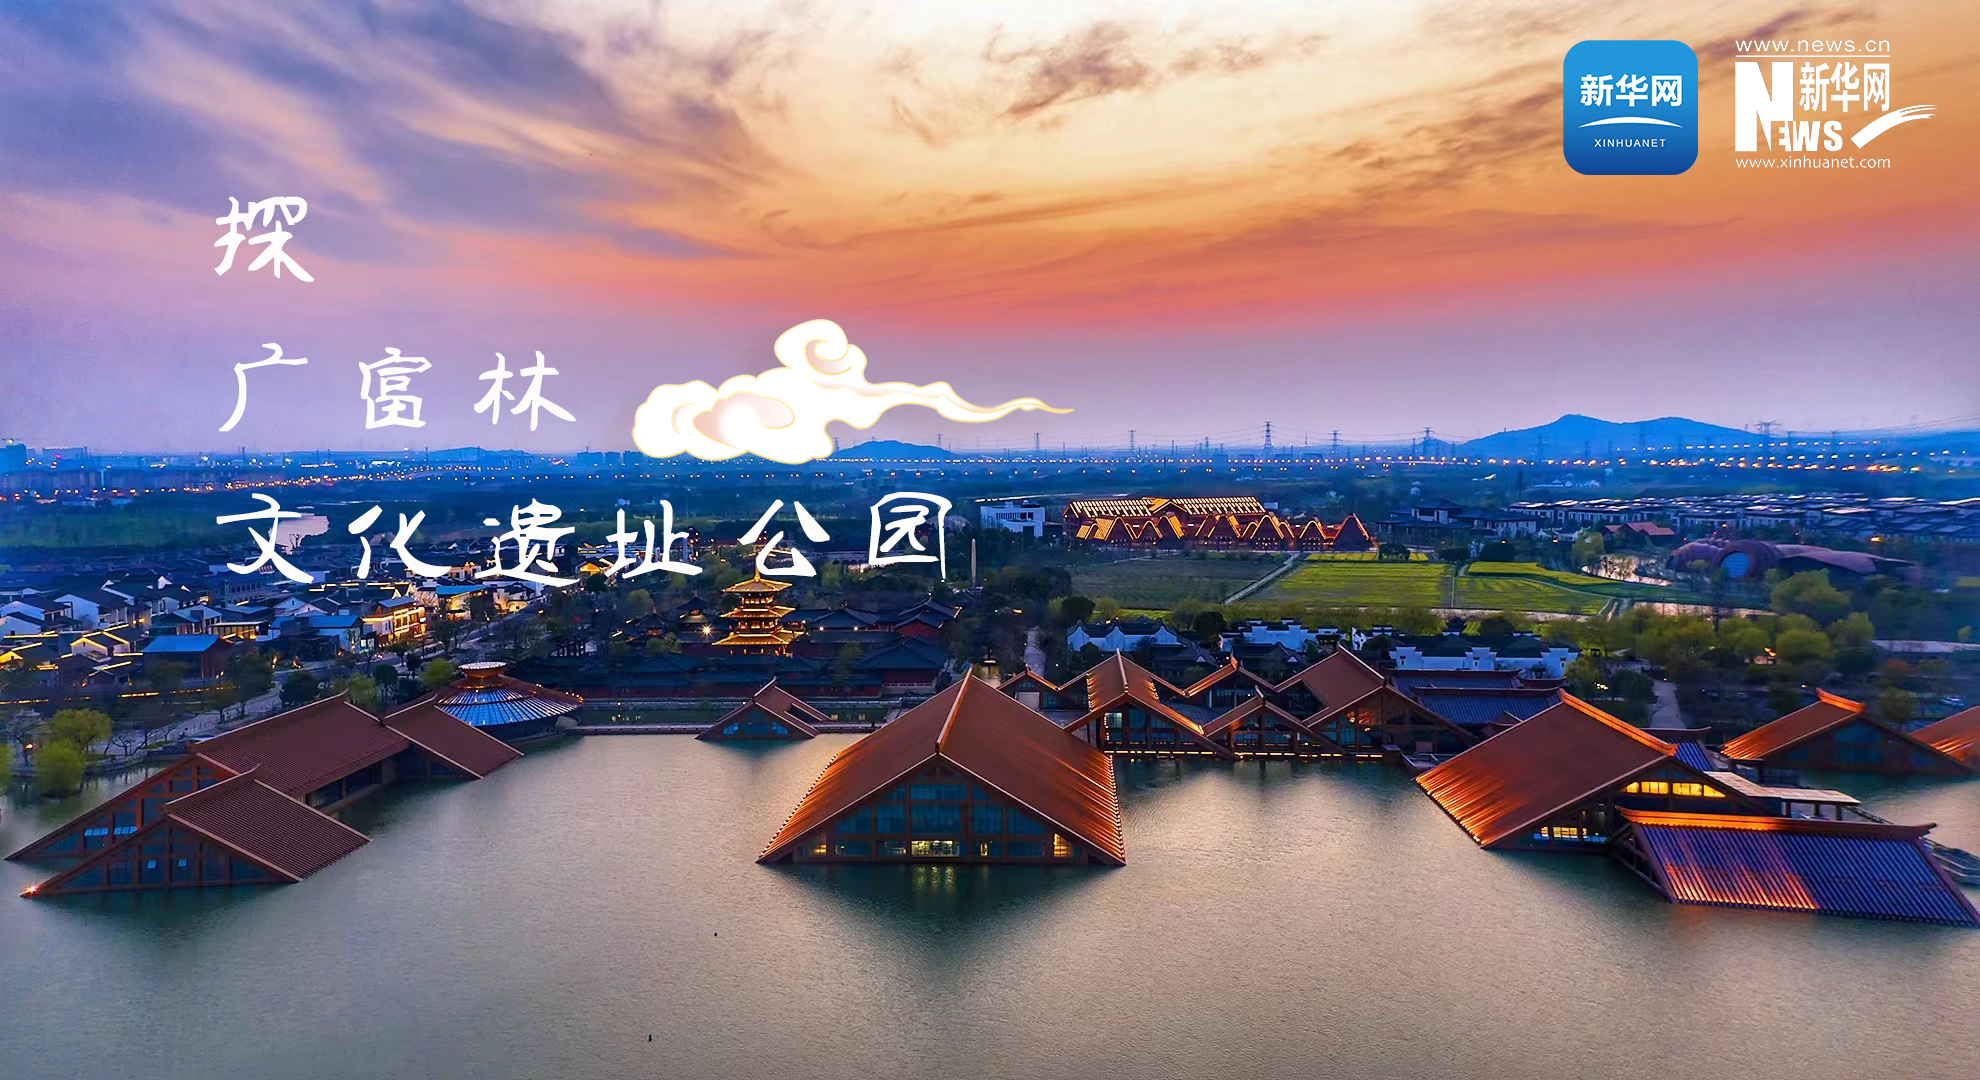 探广富林文化遗址公园 寻“上海之根、海派之源”